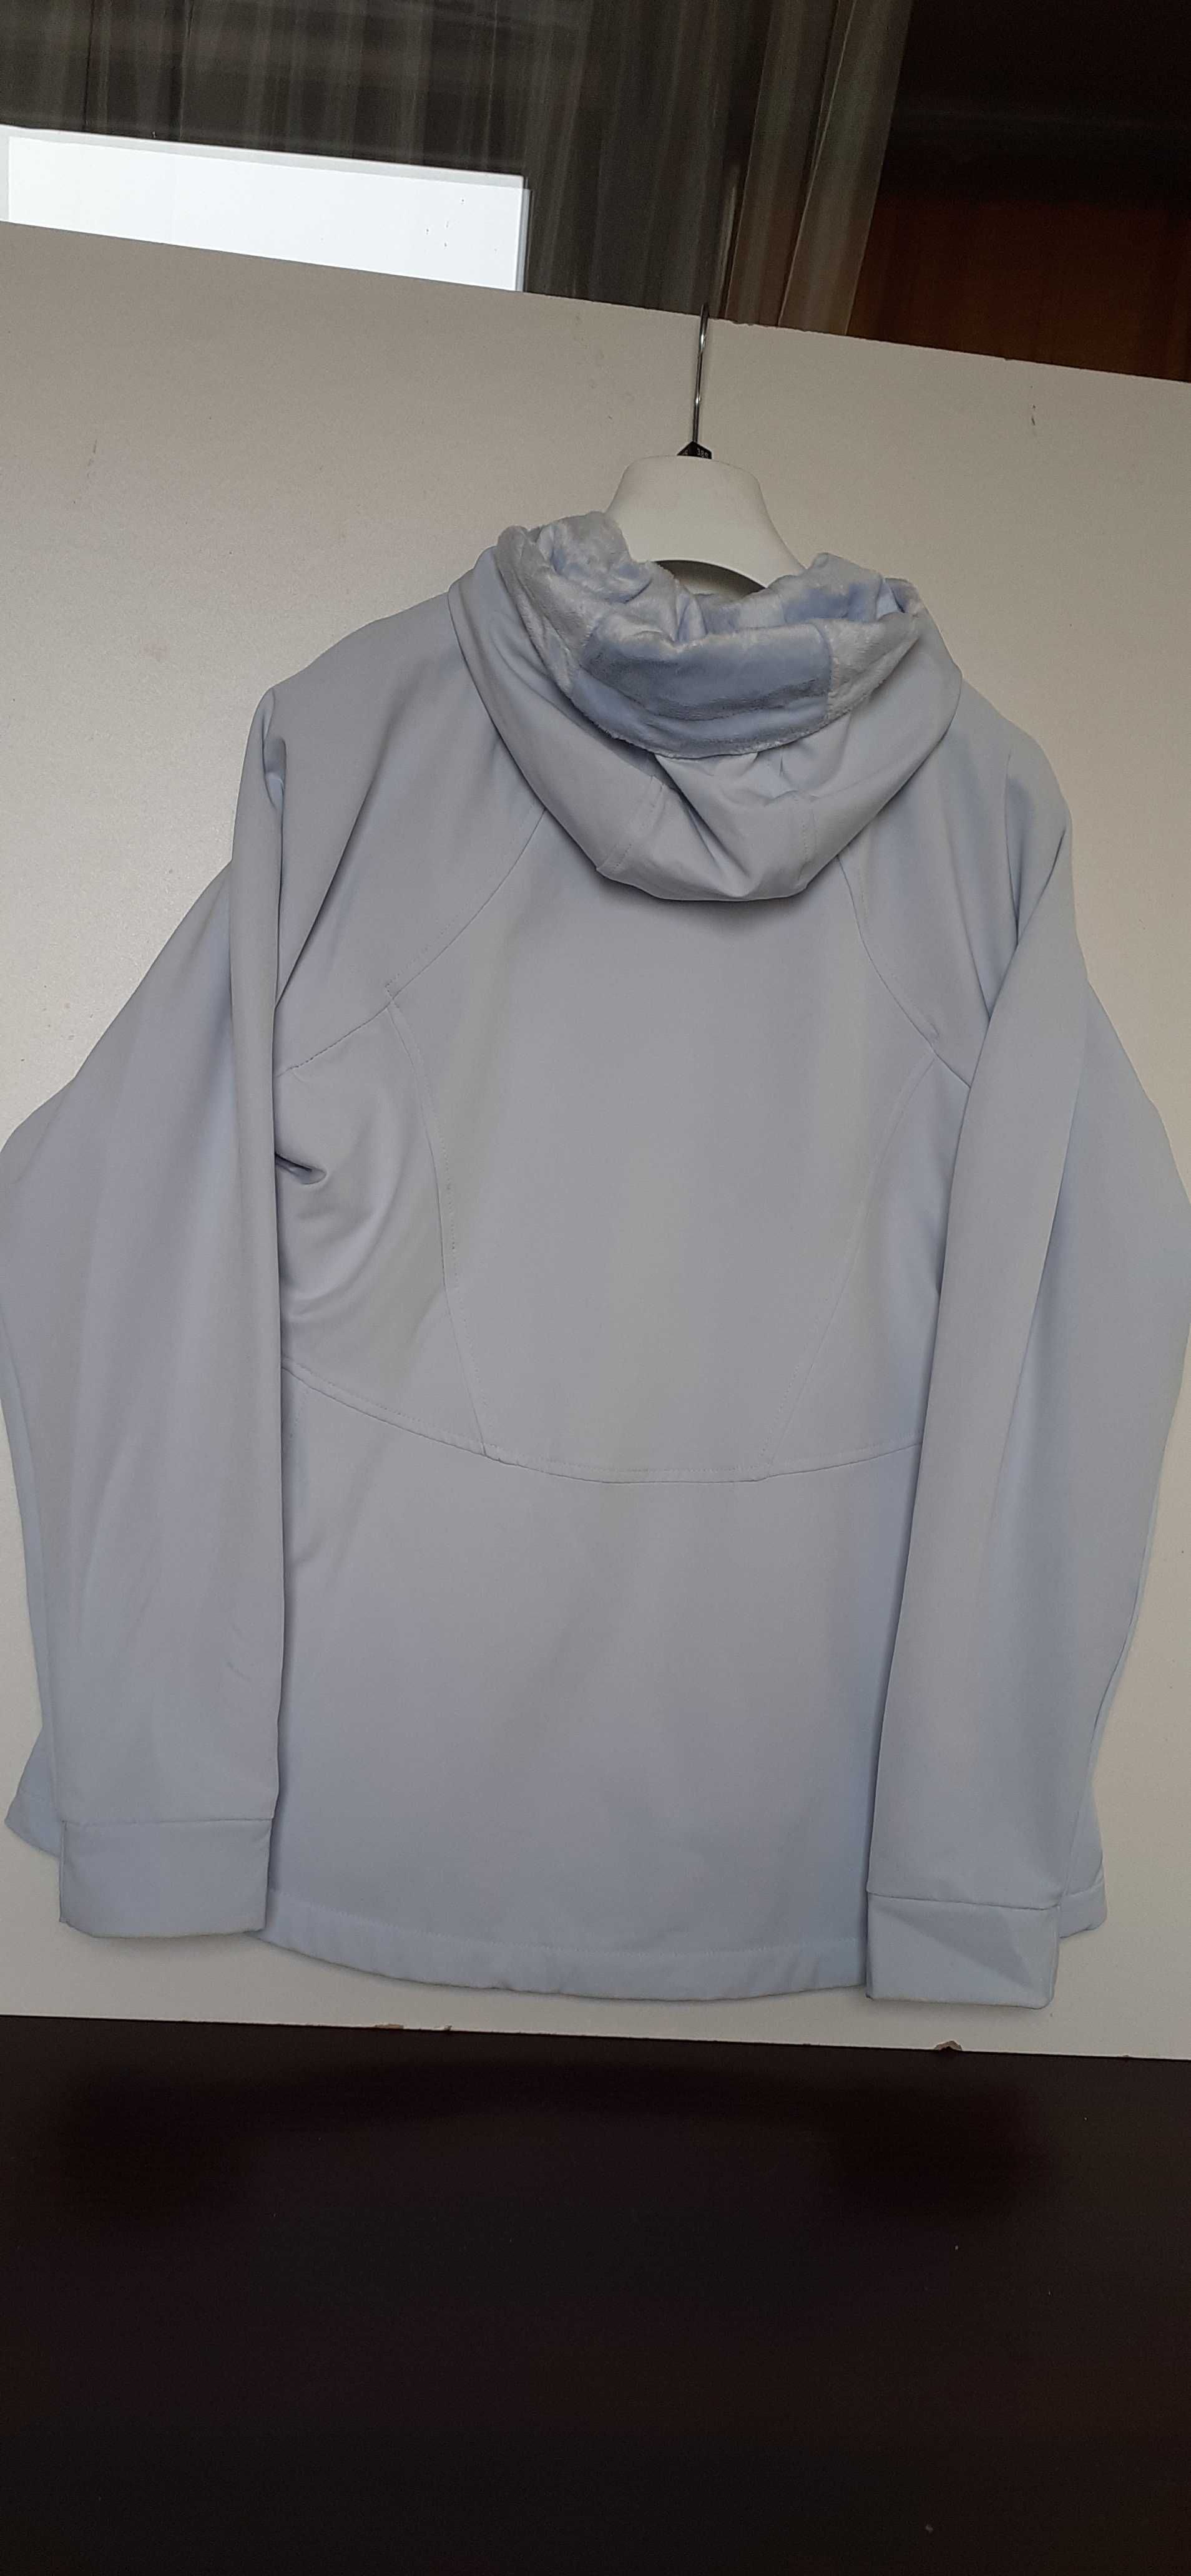 Новая женская куртка KIRKLAND размер L/G/G, бледно голубая с капюшоном